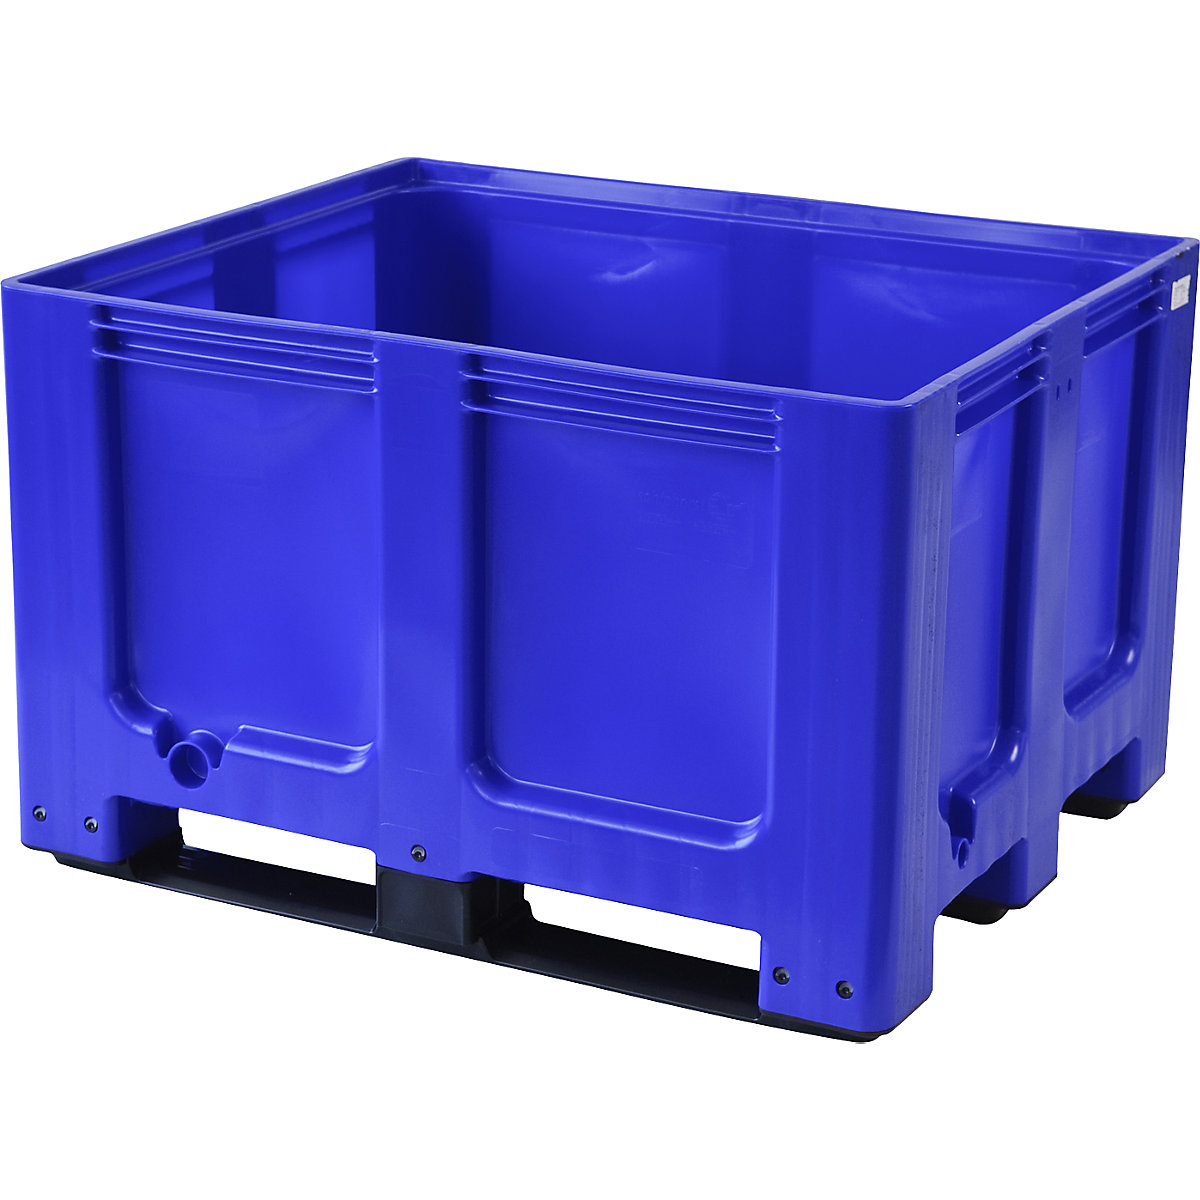 Palletcontainer, van HDPE, l x b x h = 1200 x 1000 x 790 mm, 3 lopers, gesloten, blauw-14